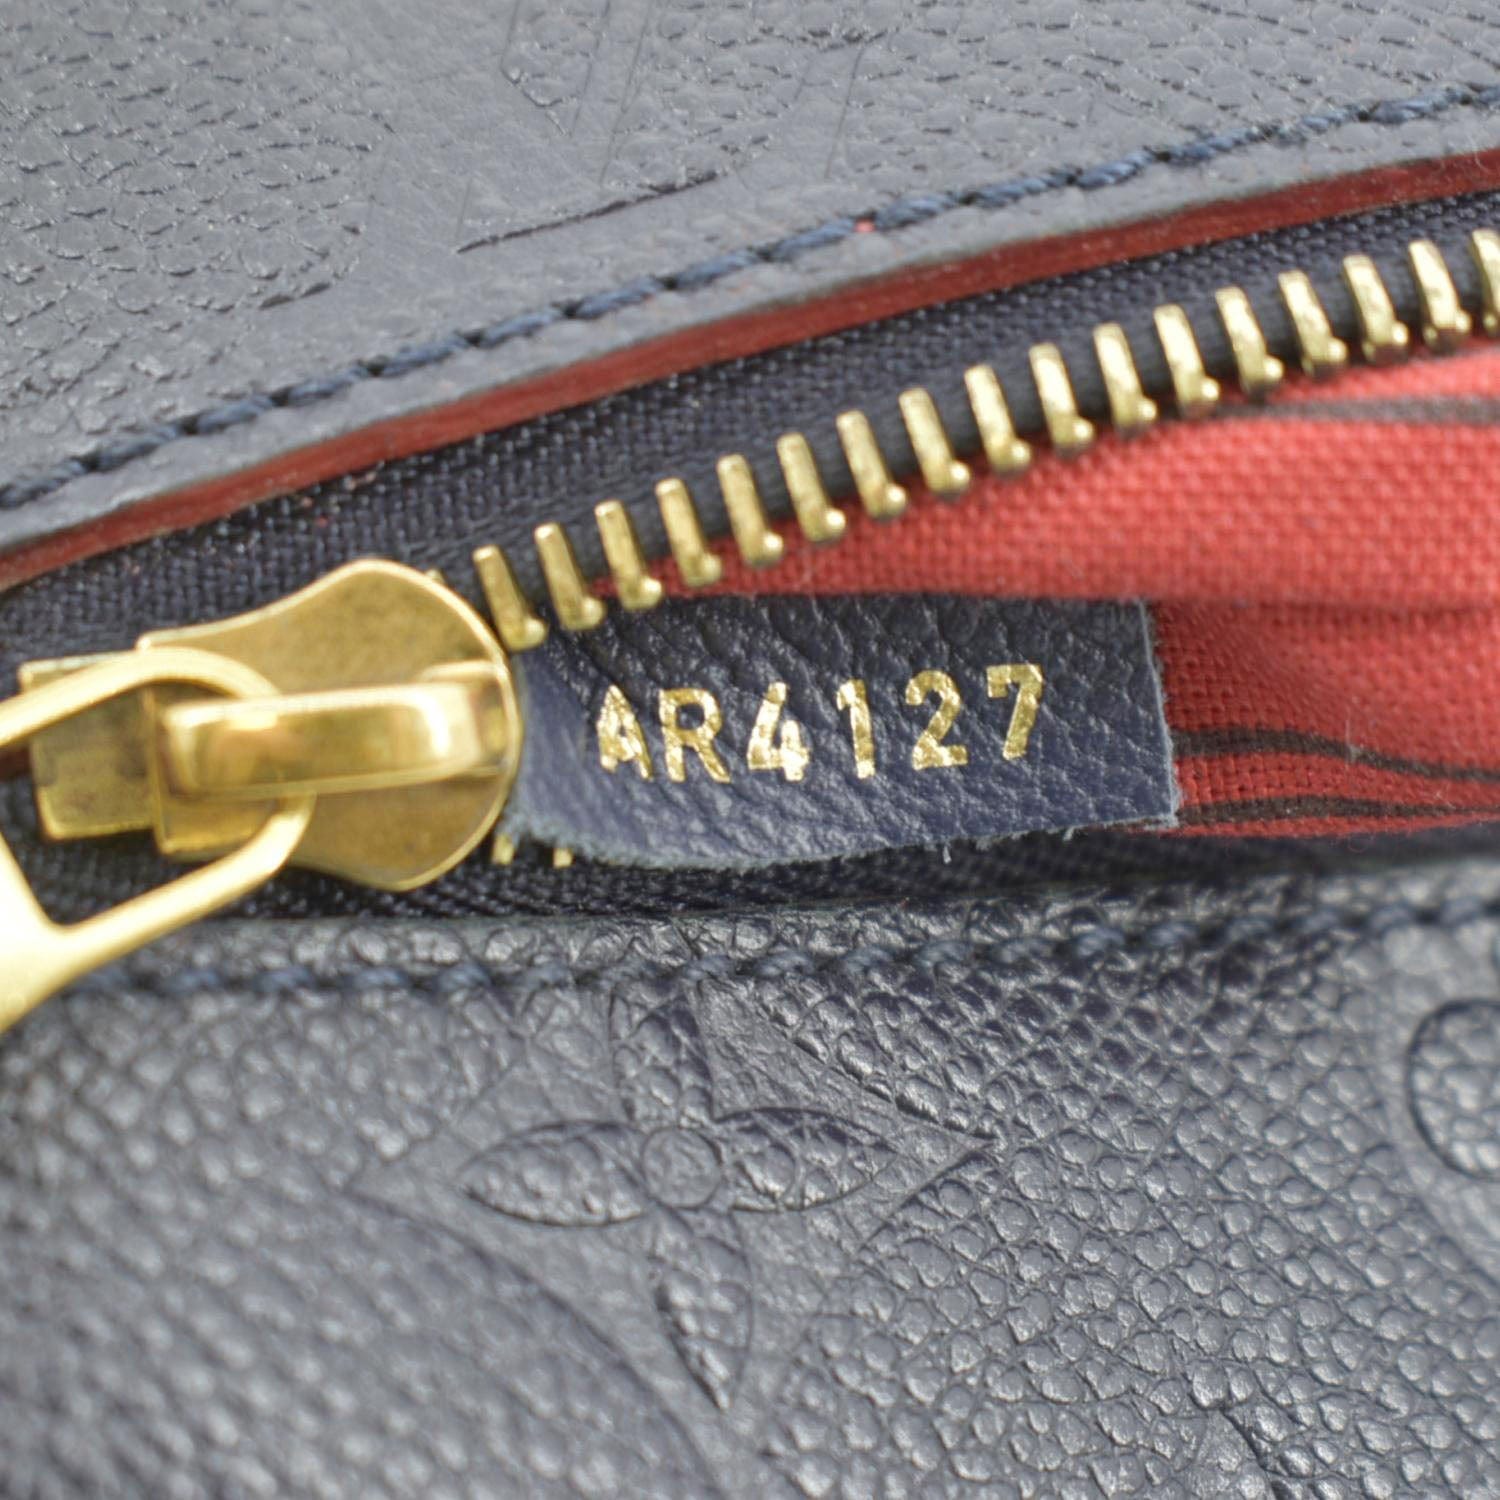 Date Code & Stamp] Louis Vuitton Pochette Metis